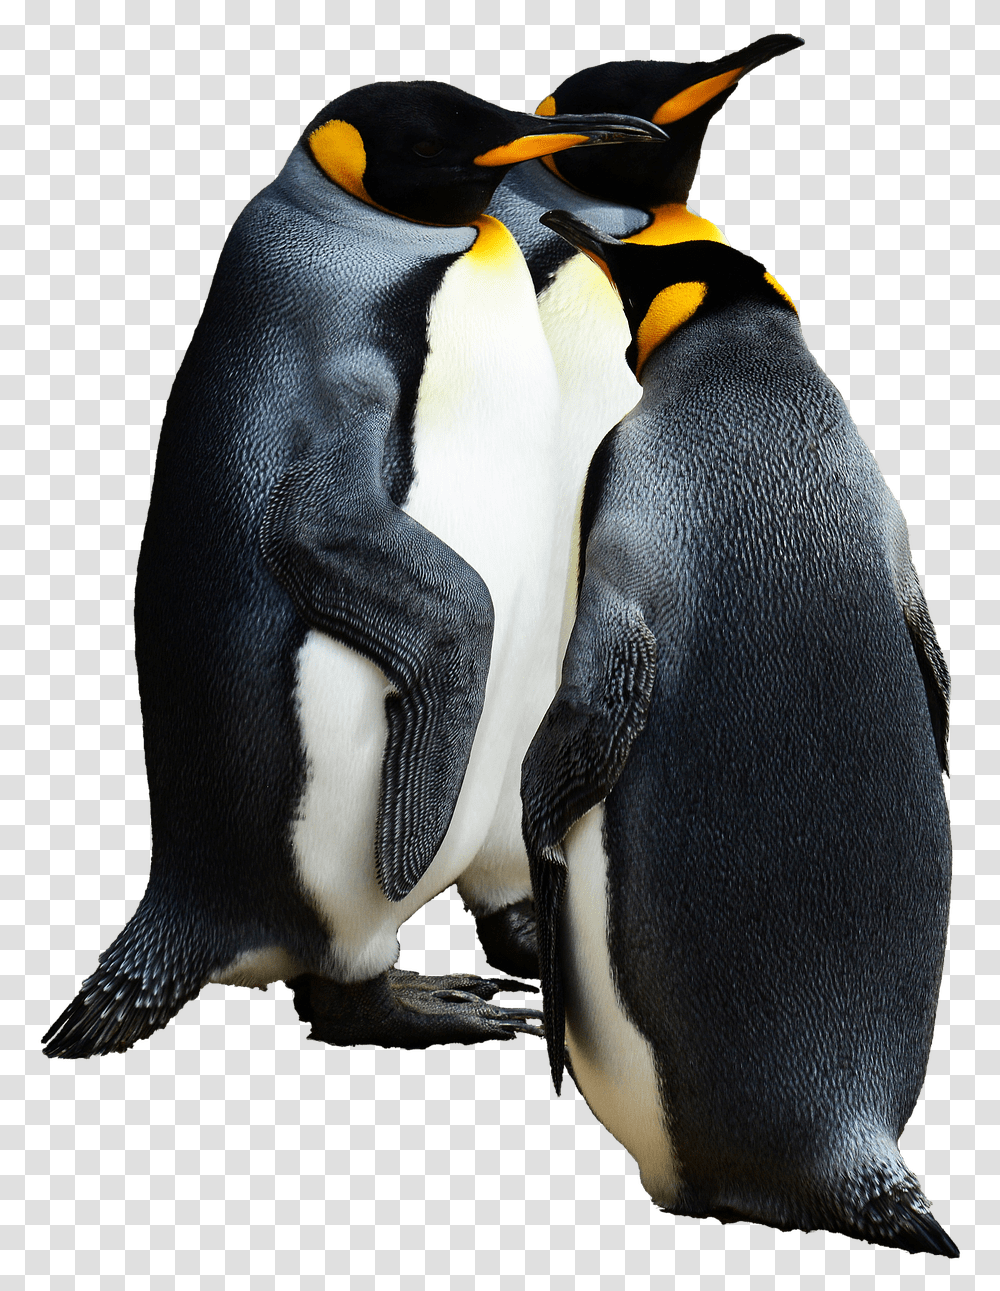 Penguins Group Of Emperor Penguin Background, Bird, Animal, King Penguin Transparent Png